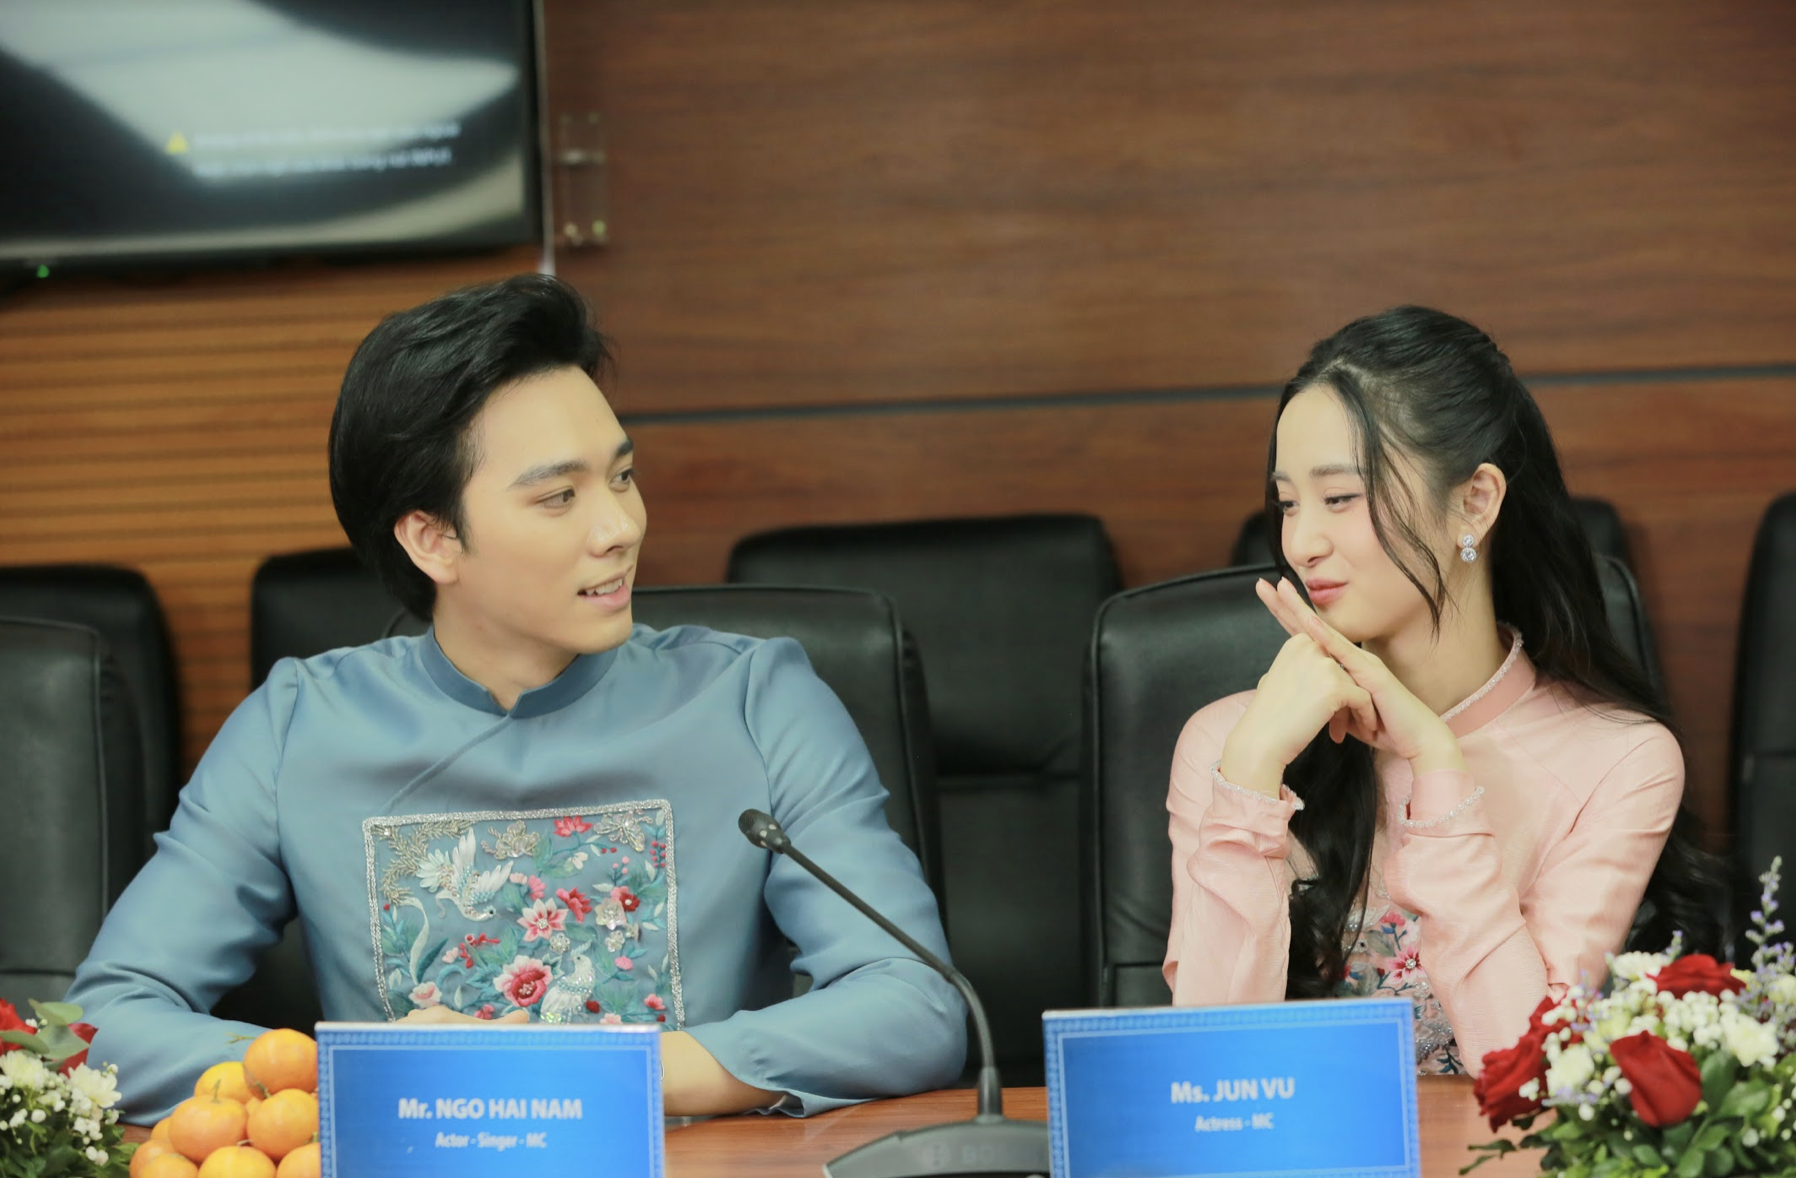 Jun Vũ lần đầu tiên dẫn dắt gameshow hẹn hò dành cho người Việt Nam tại Hàn Quốc - Ảnh 2.